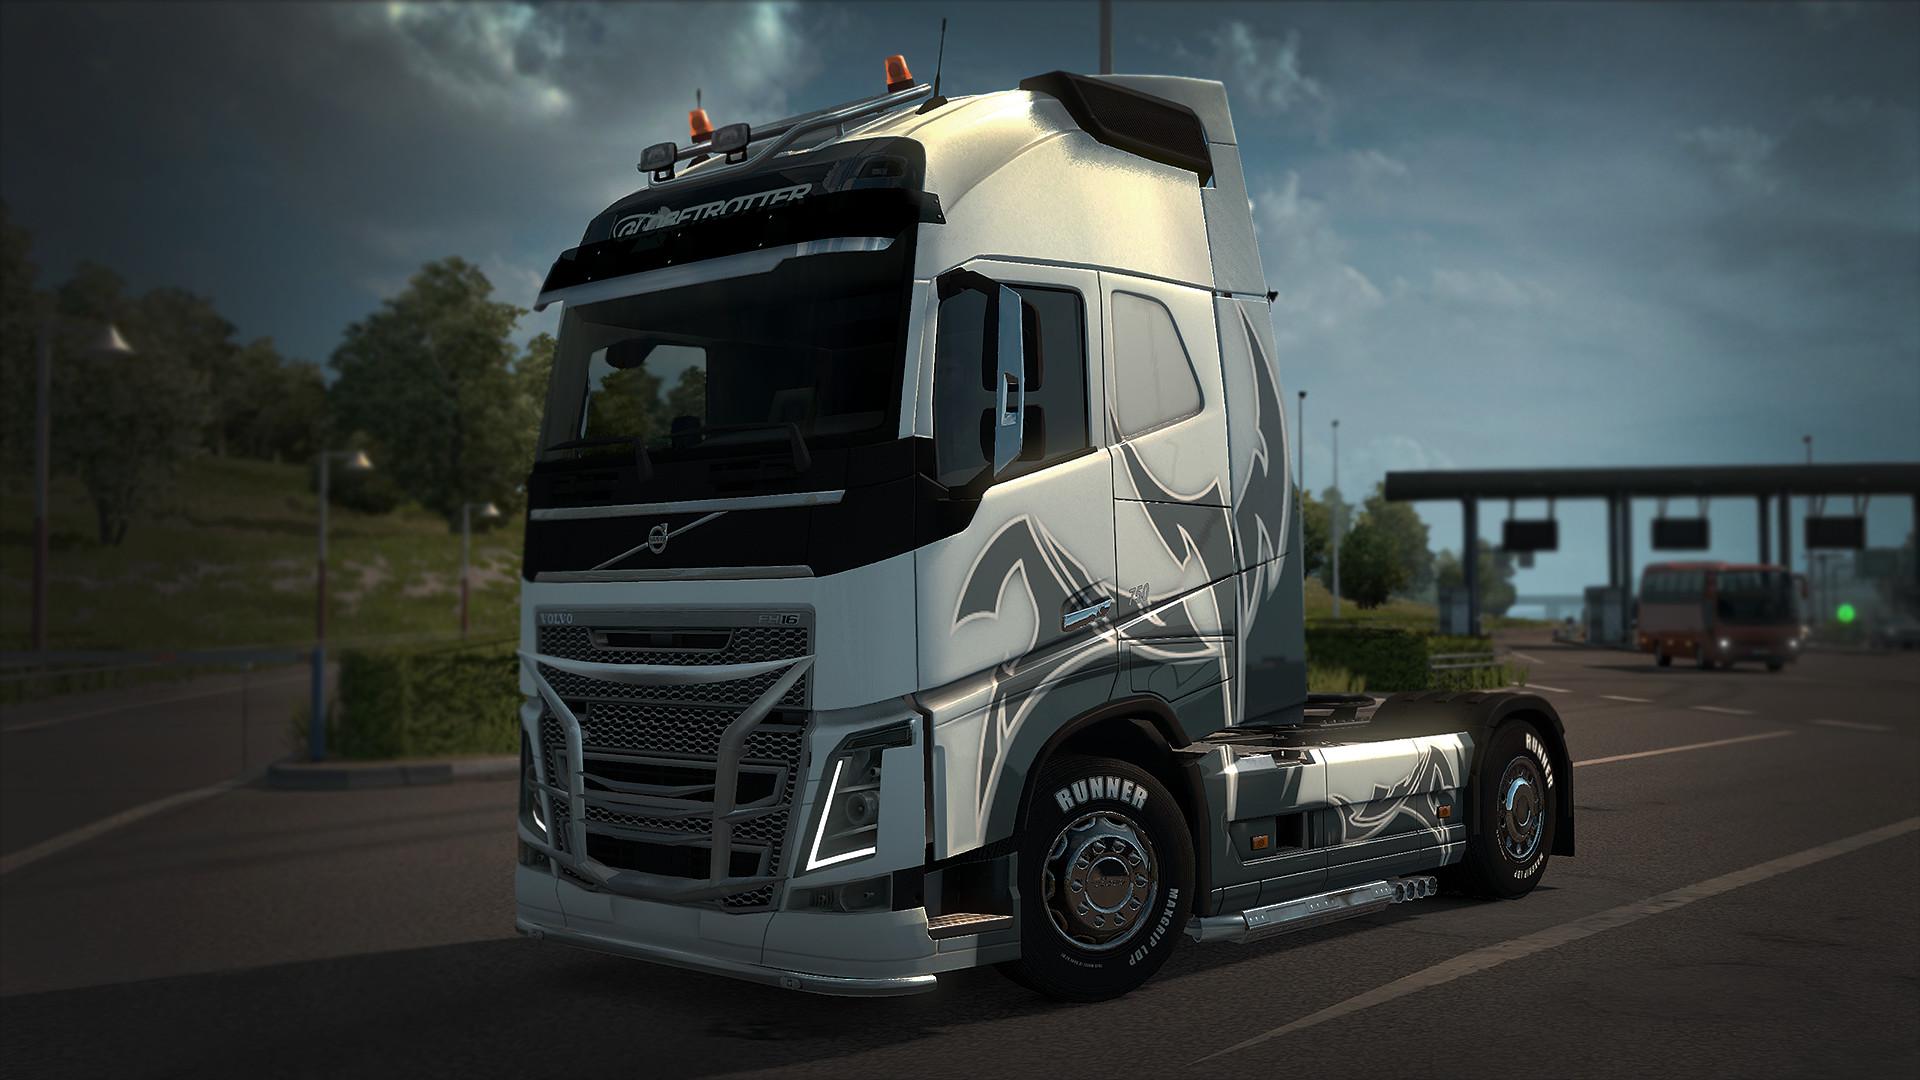 Euro Truck Simulator 2 - Wheel Tuning Pack